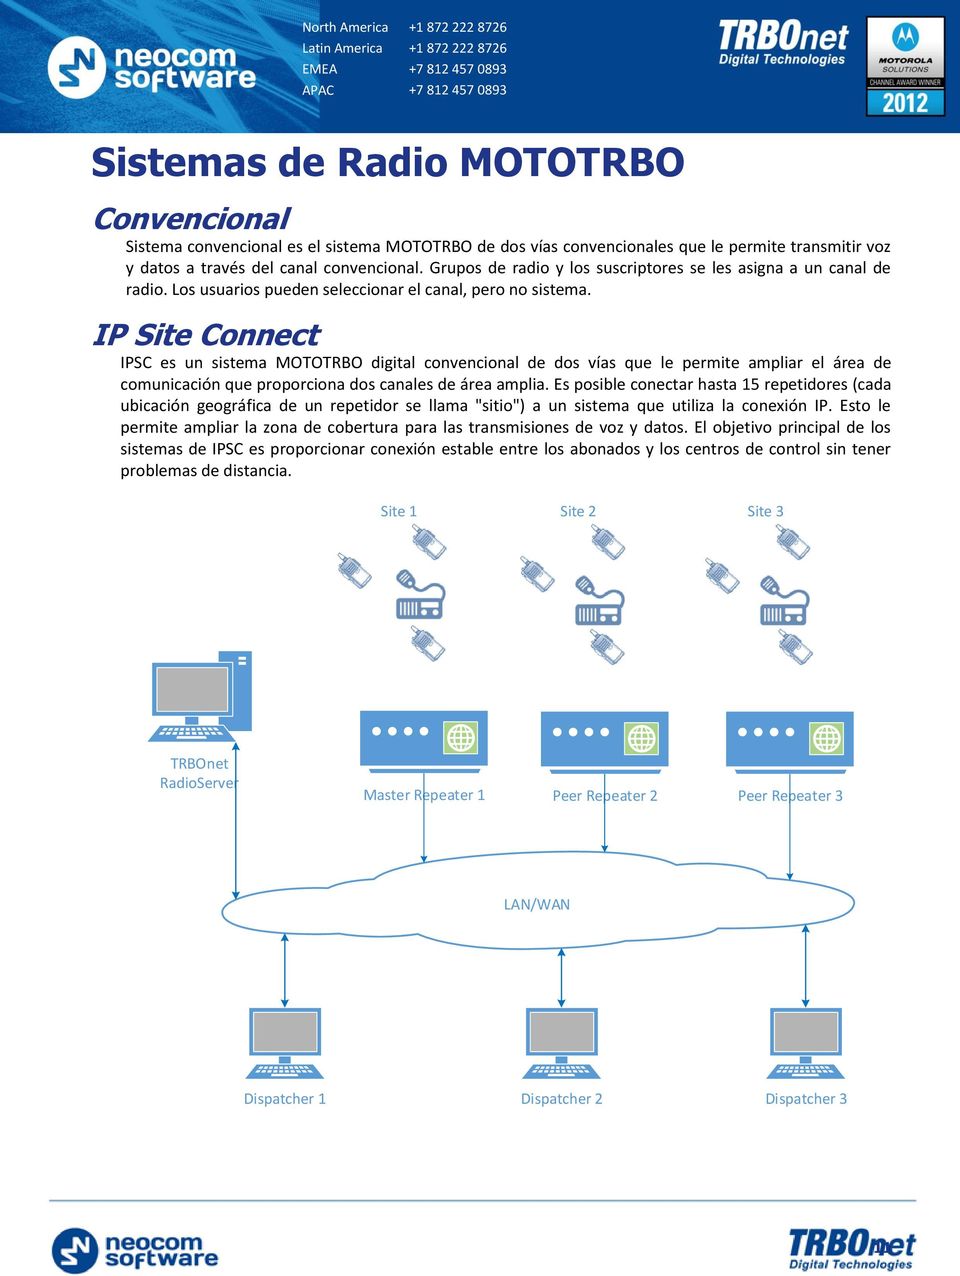 IP Site Connect IPSC es un sistema MOTOTRBO digital convencional de dos vías que le permite ampliar el área de comunicación que proporciona dos canales de área amplia.